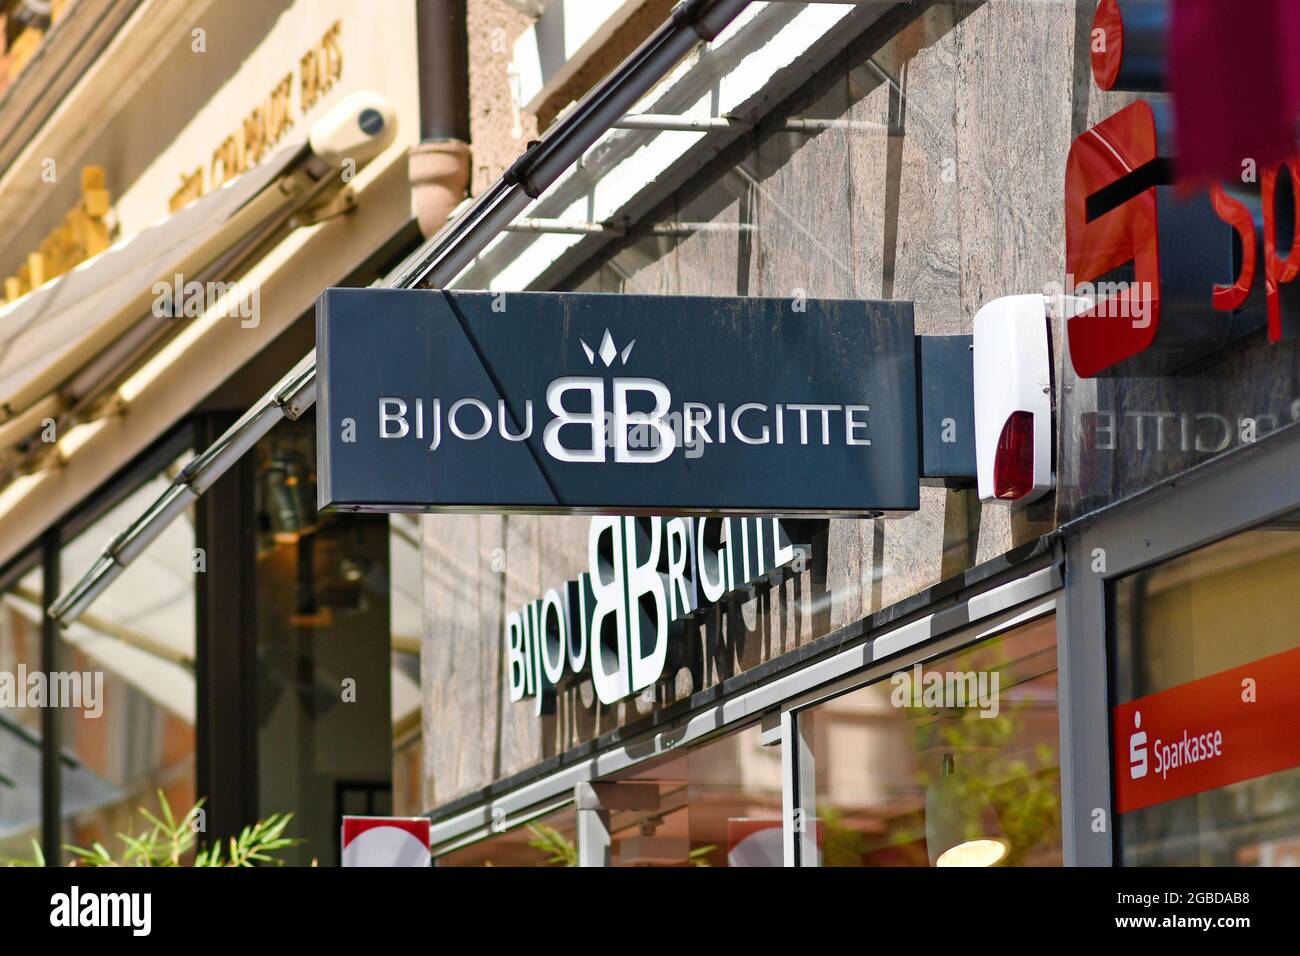 Bijou brigitte Banque de photographies et d'images à haute résolution -  Alamy